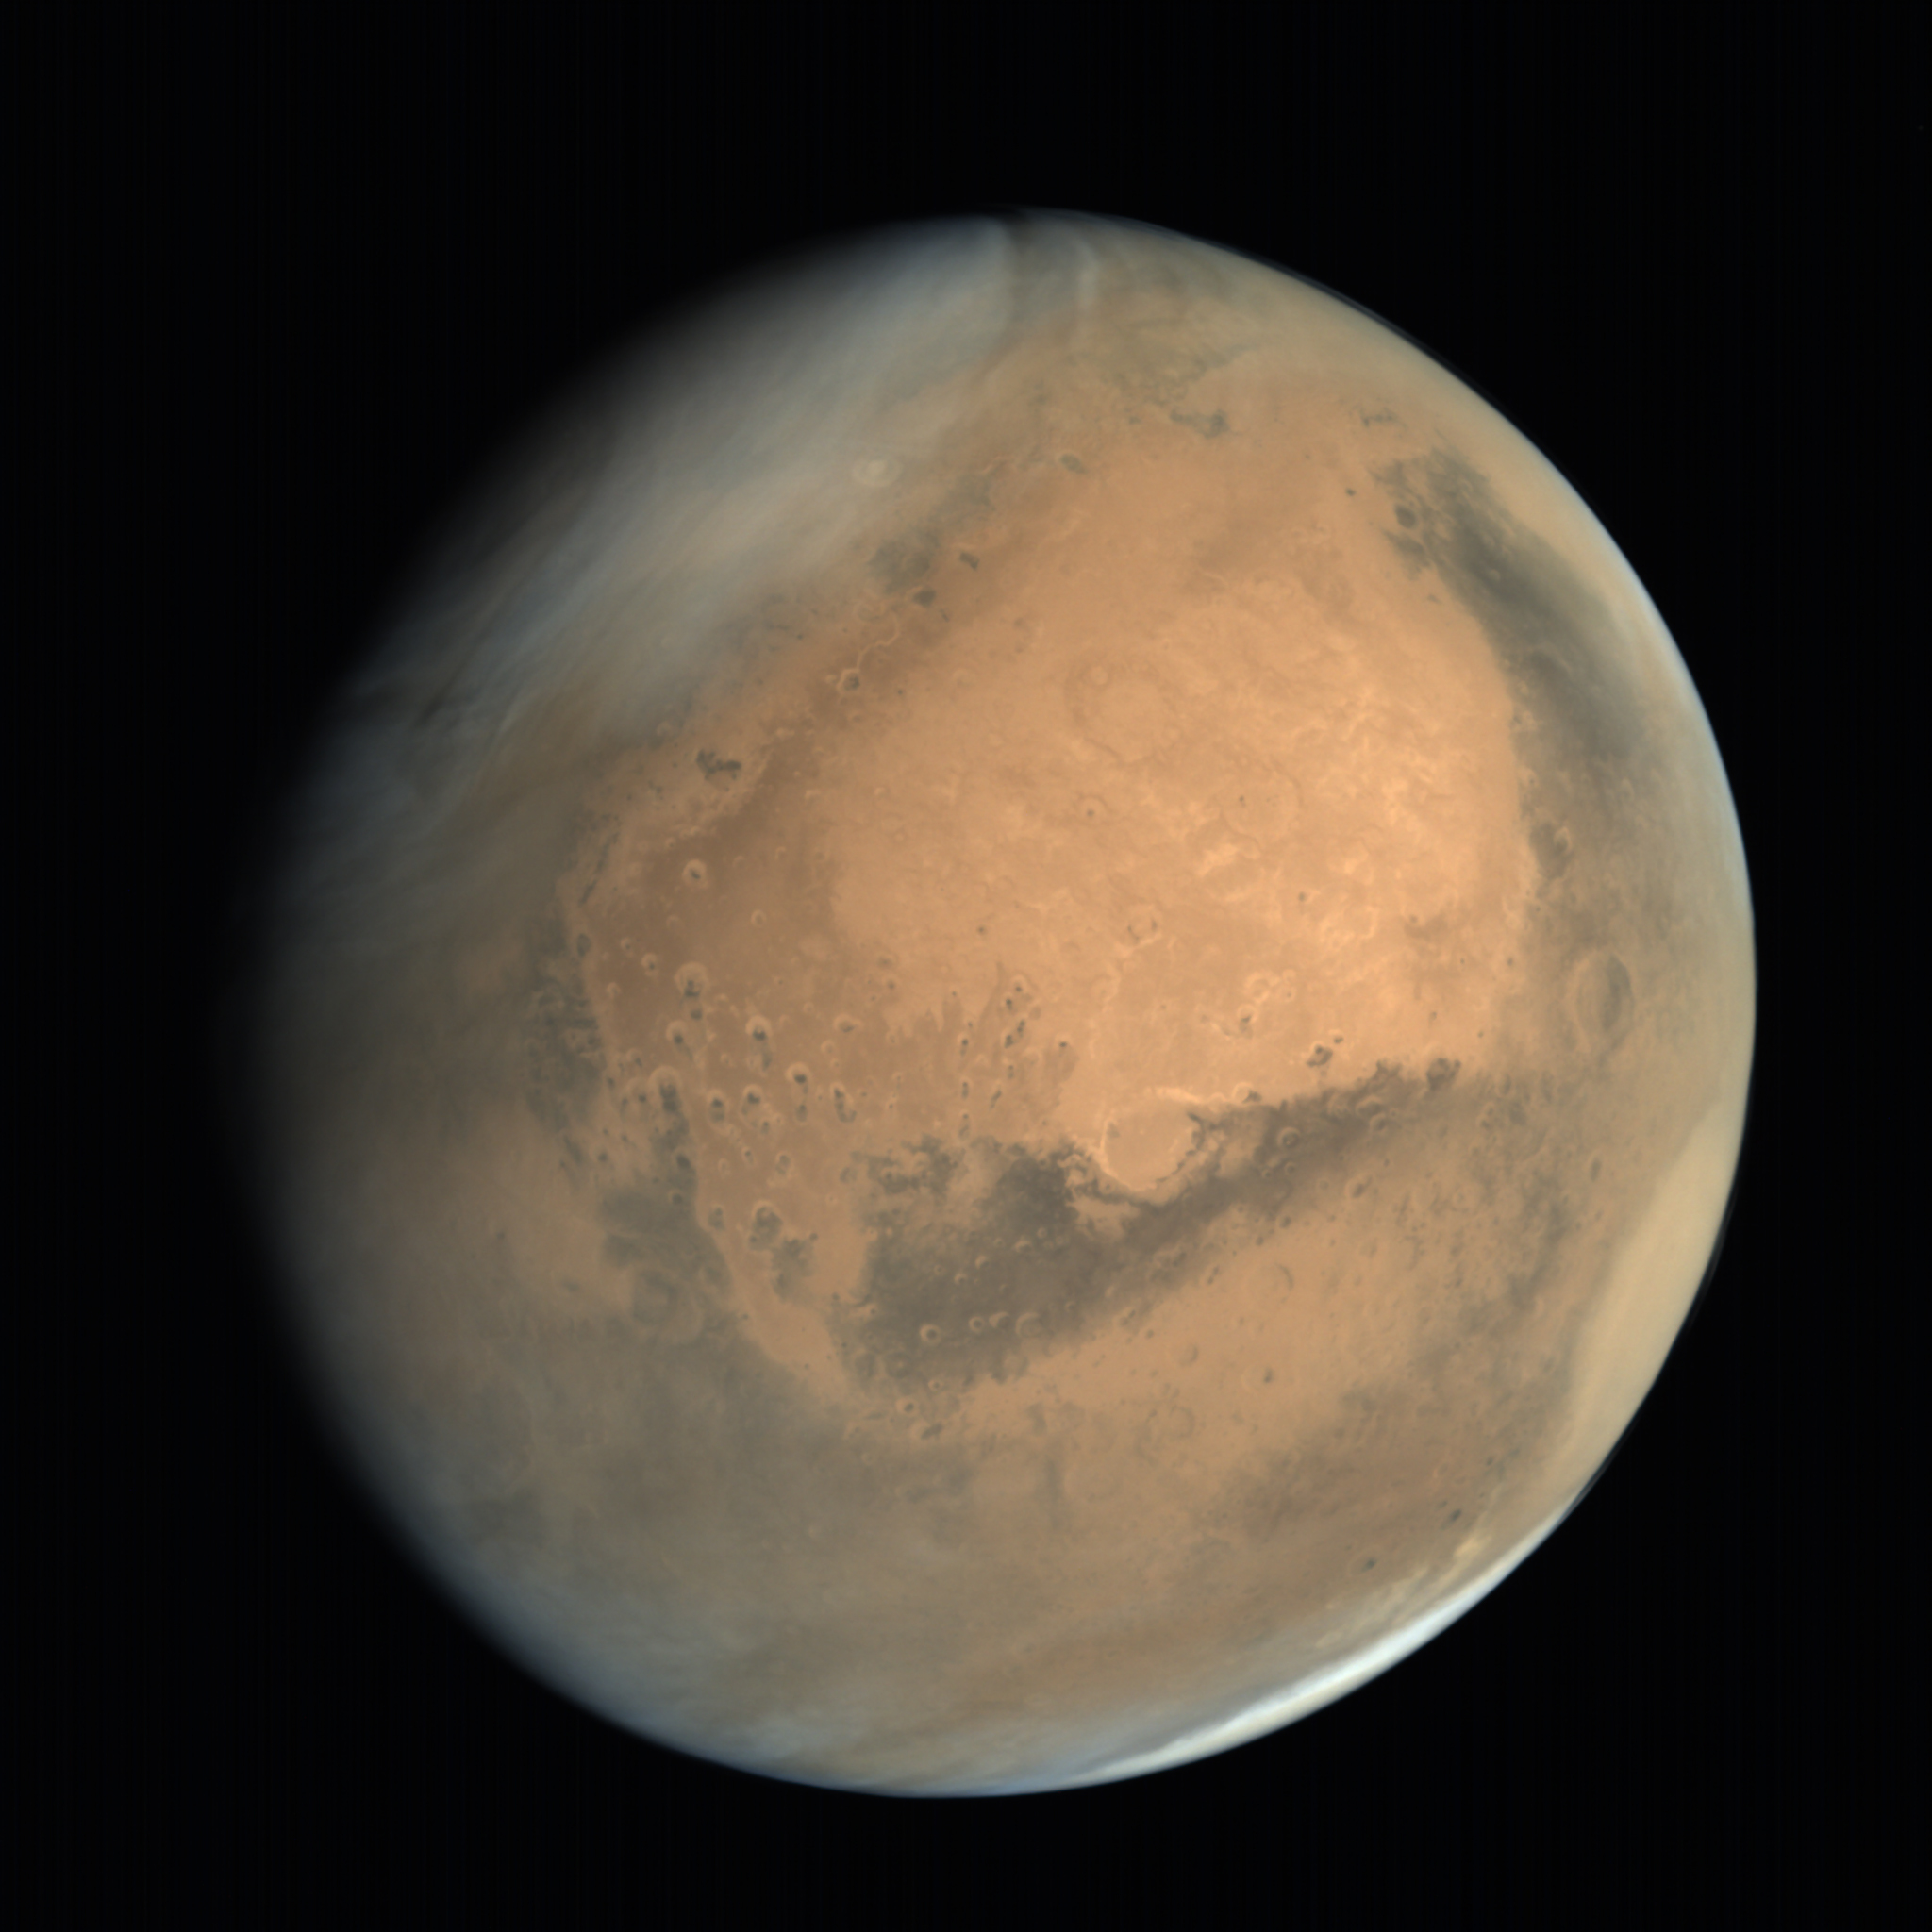 Hindistan'ın Mars'taki uzay aracından inanılmaz fotoğraflar